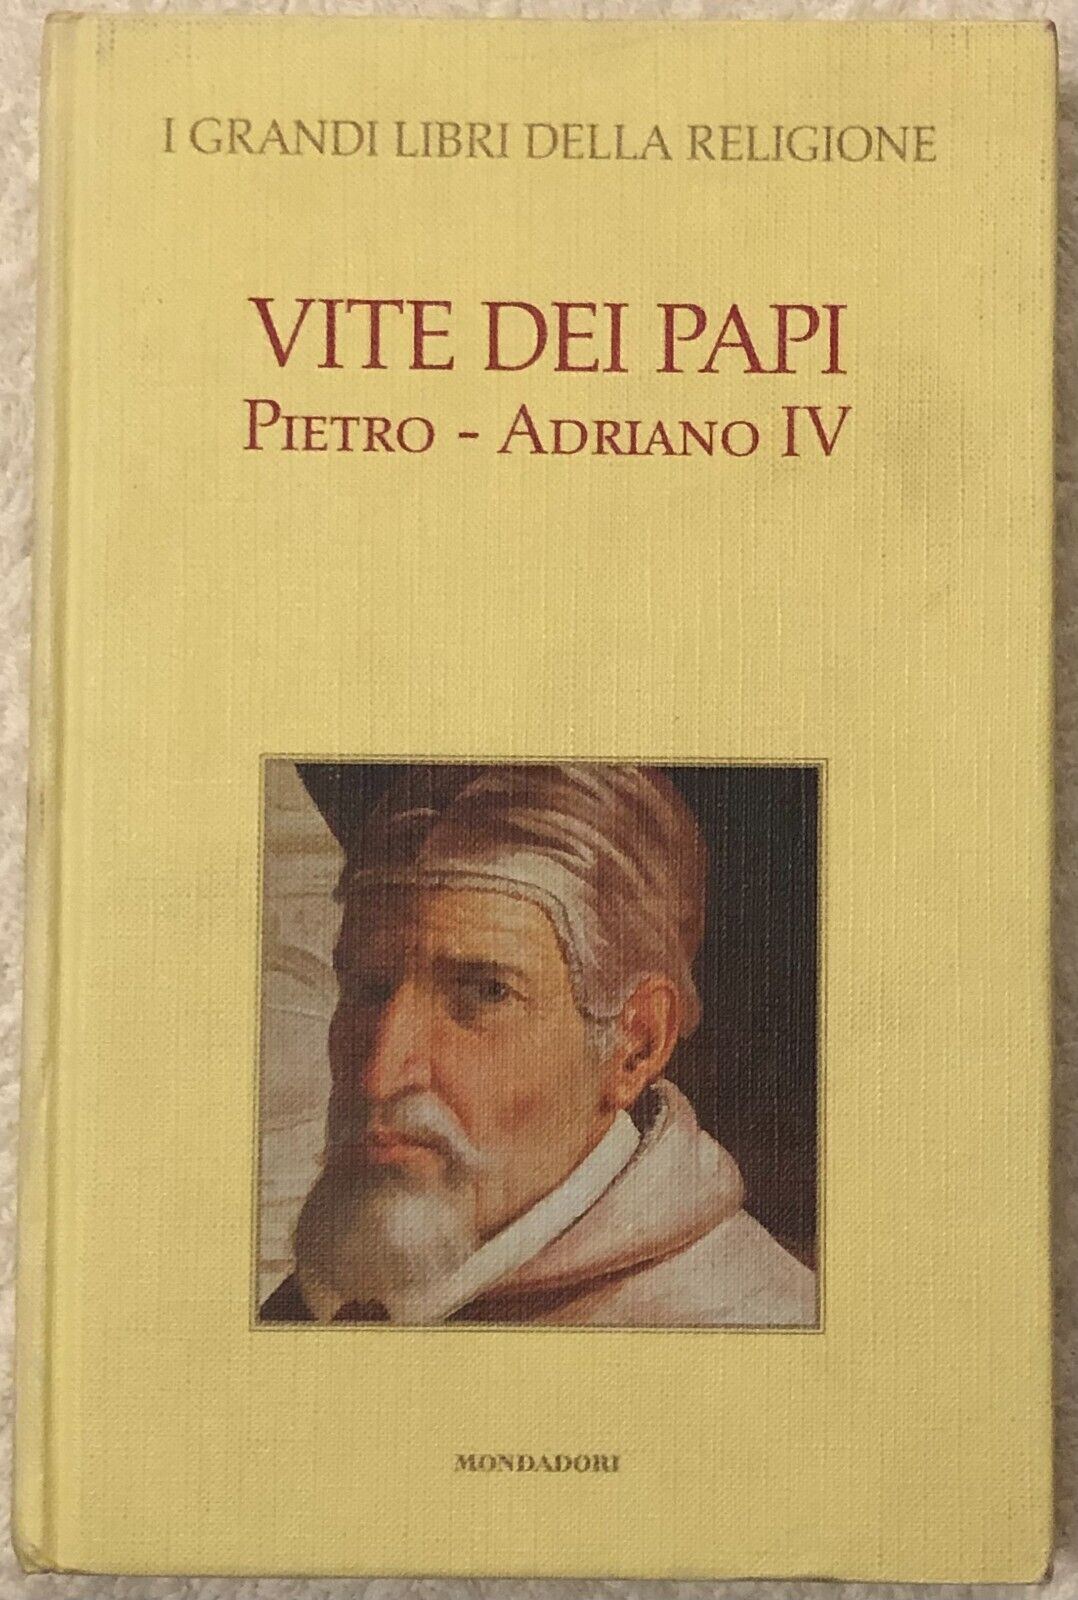 I grandi libri della religione n. 8 - Vite dei Papi Pietro - Adriano IV di Aa.vv